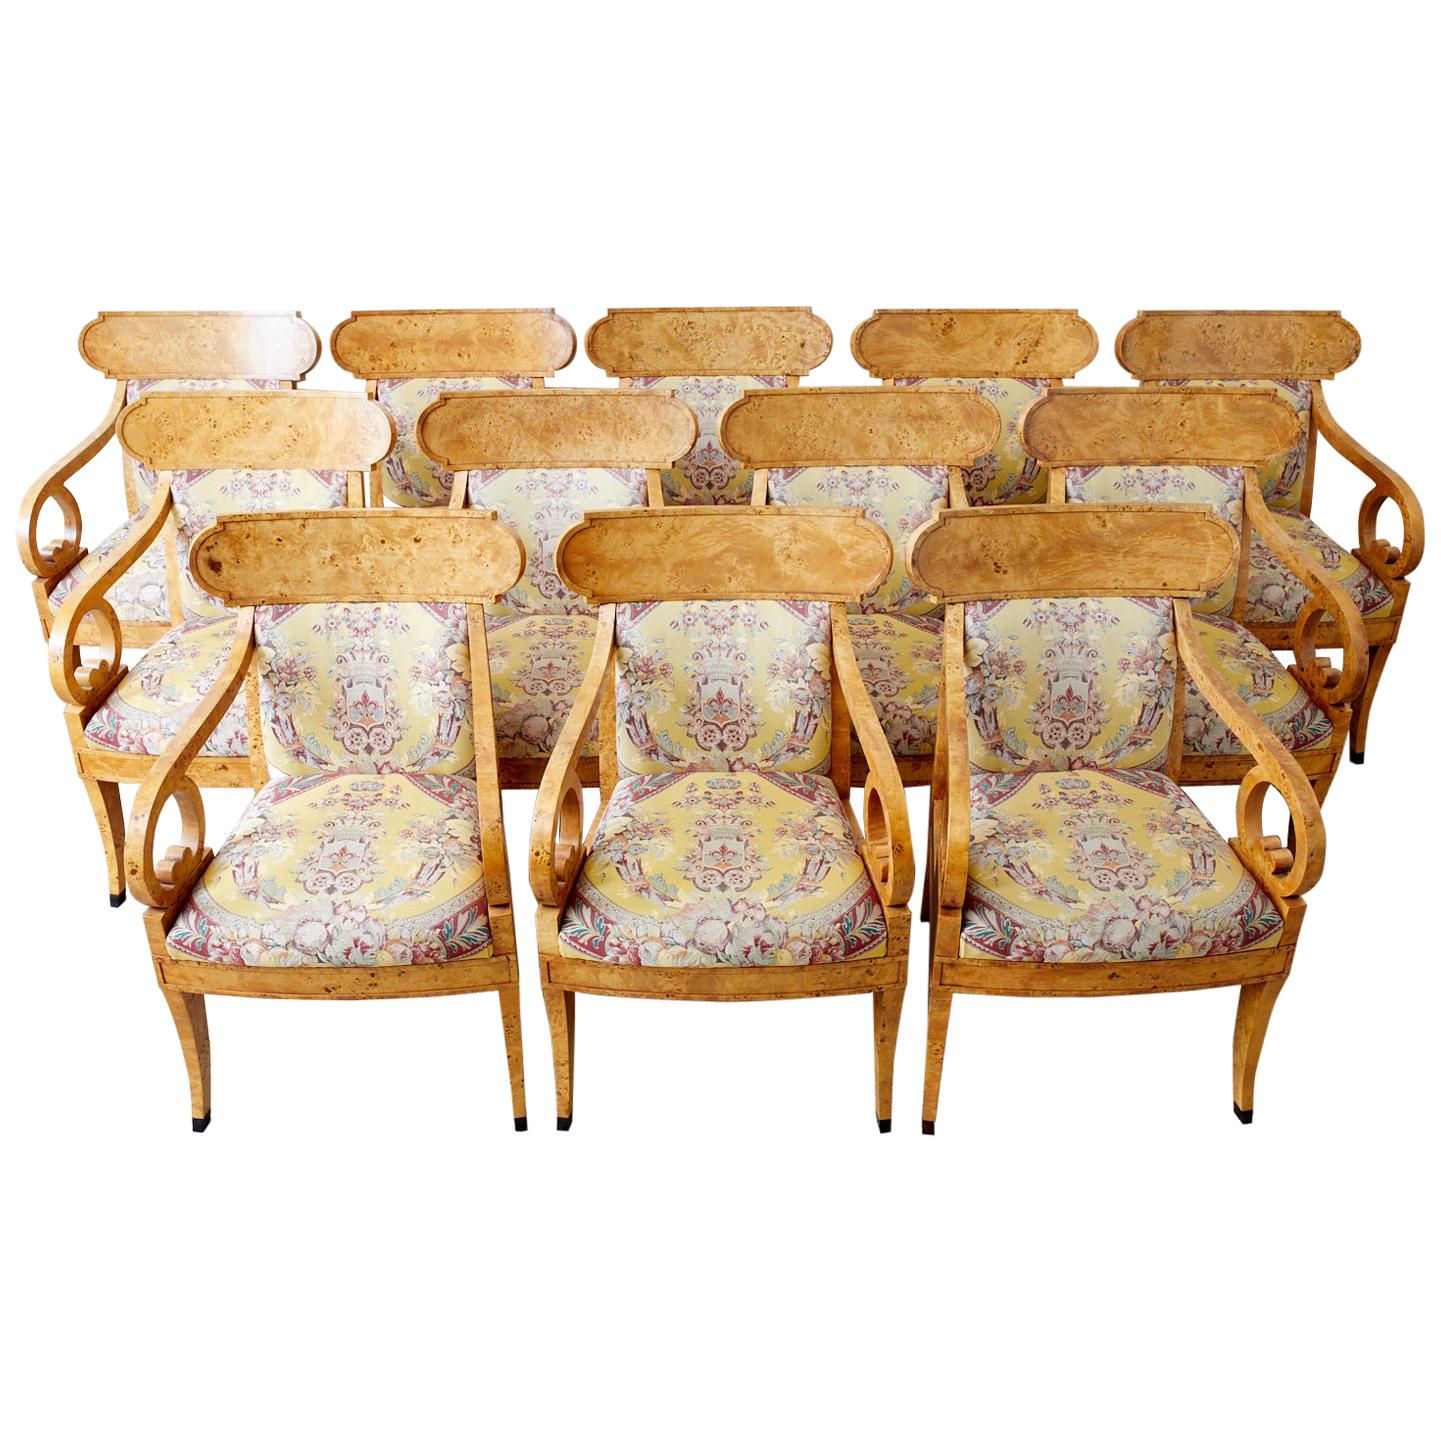 Prächtiger Satz von zwölf englischen Klismos-Sesseln oder Esszimmerstühlen im Regency-Stil von Baker Furniture. Die handgefertigten Rahmen sind mit dramatischen Wurzelholzfurnieren verkleidet. Die geschwungene Rückenlehne in Klismos-Form wird von